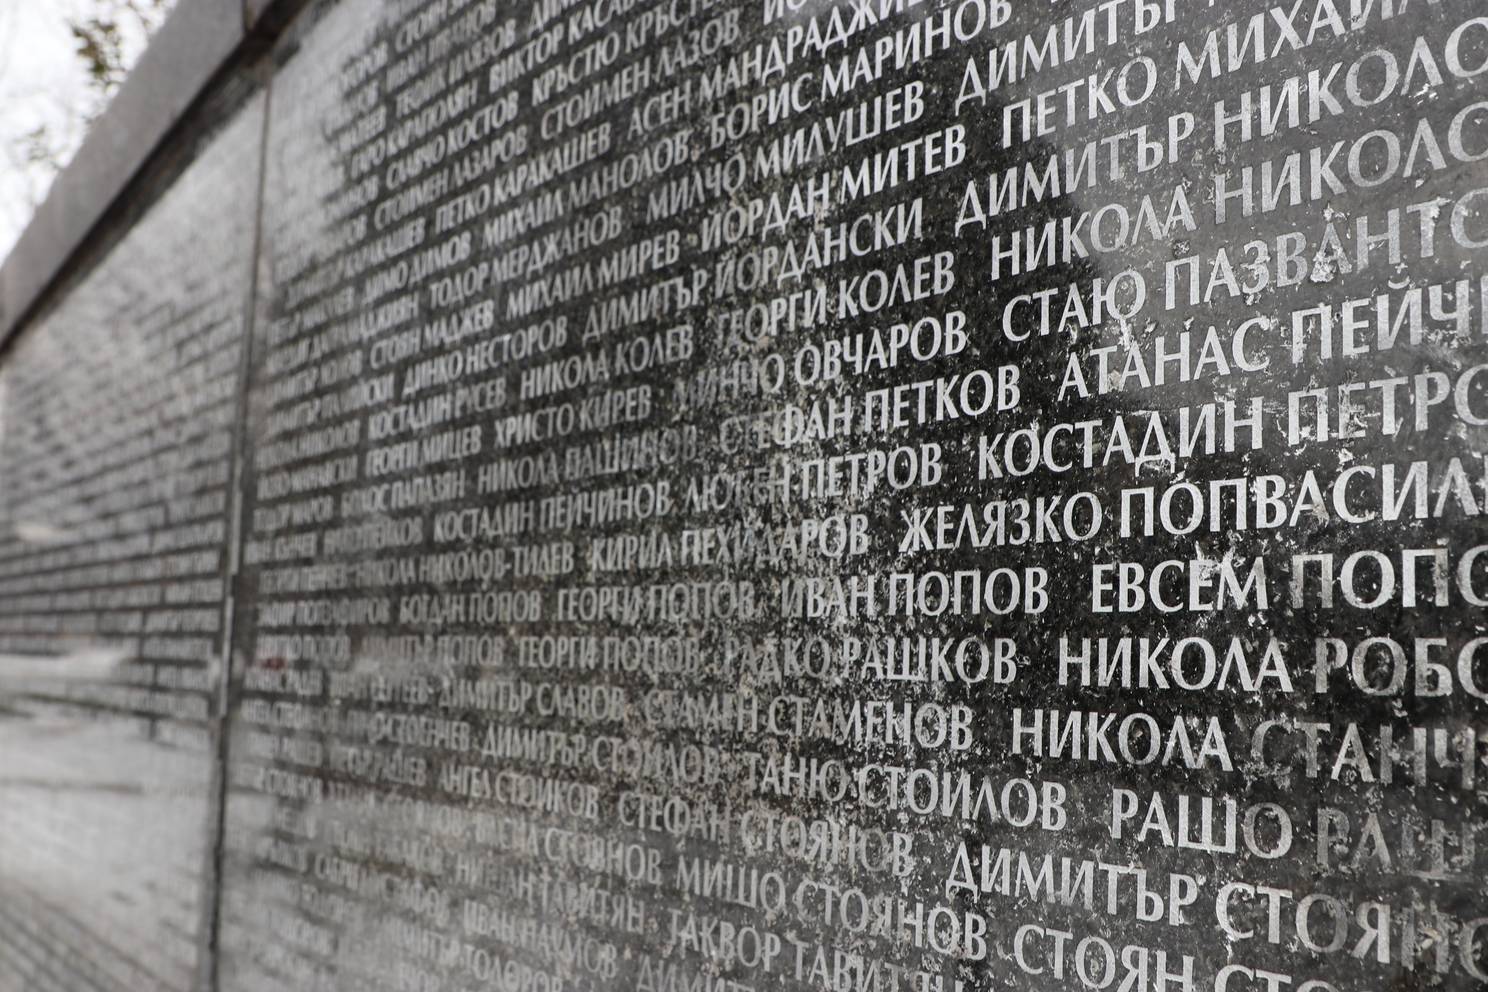 Мемориал на жертвите на комунизма